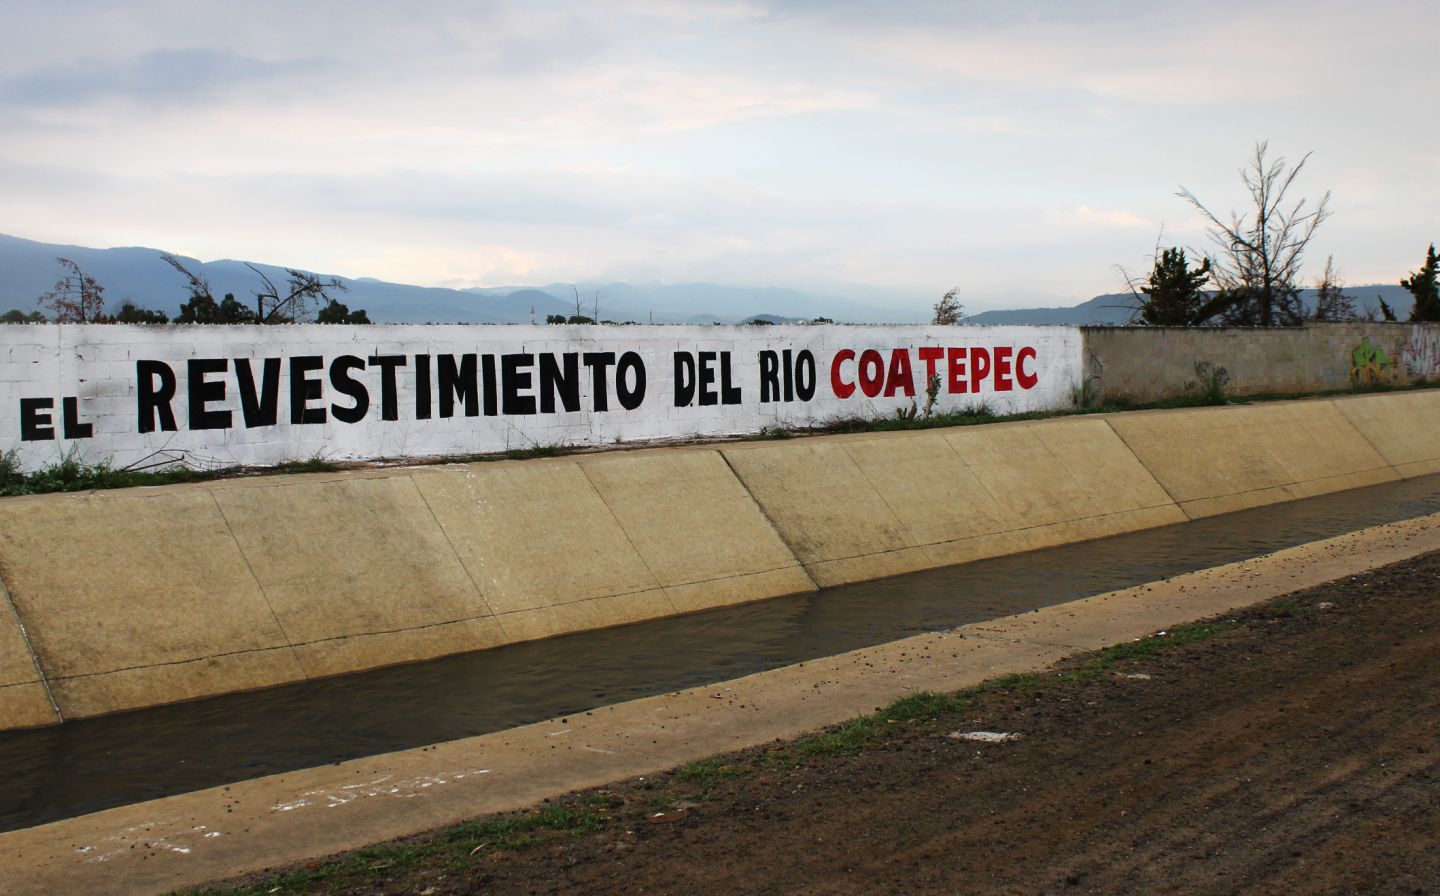 #En Chimalhuacán concluimos el revestimiento del Río Coatepec,  alcalde Jesús Tolentino